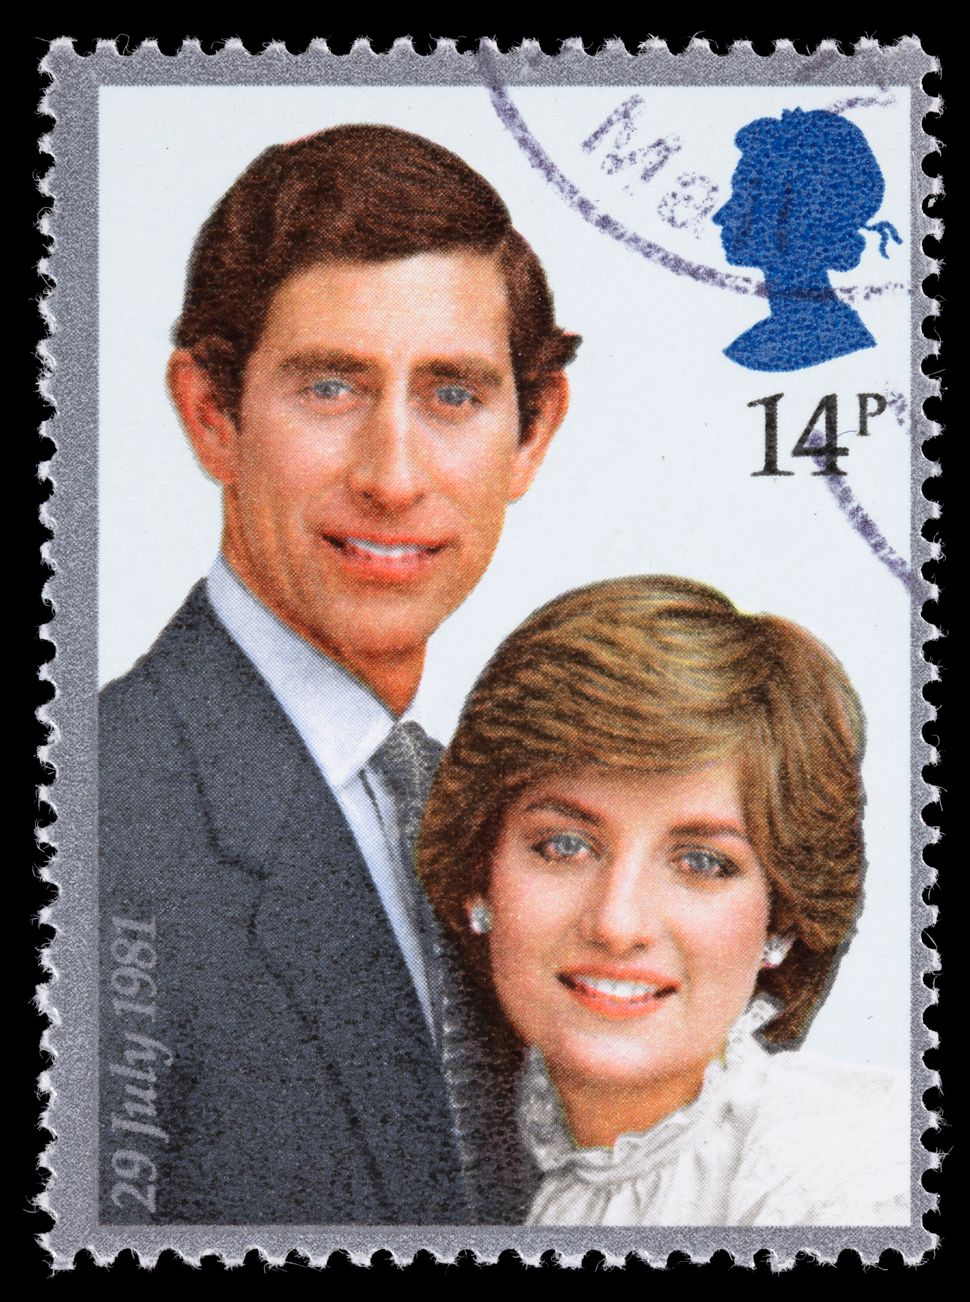 Le mariage du prince Charles de Galles et de Lady Diana Spencer, comme on le voit sur un timbre de l'époque.